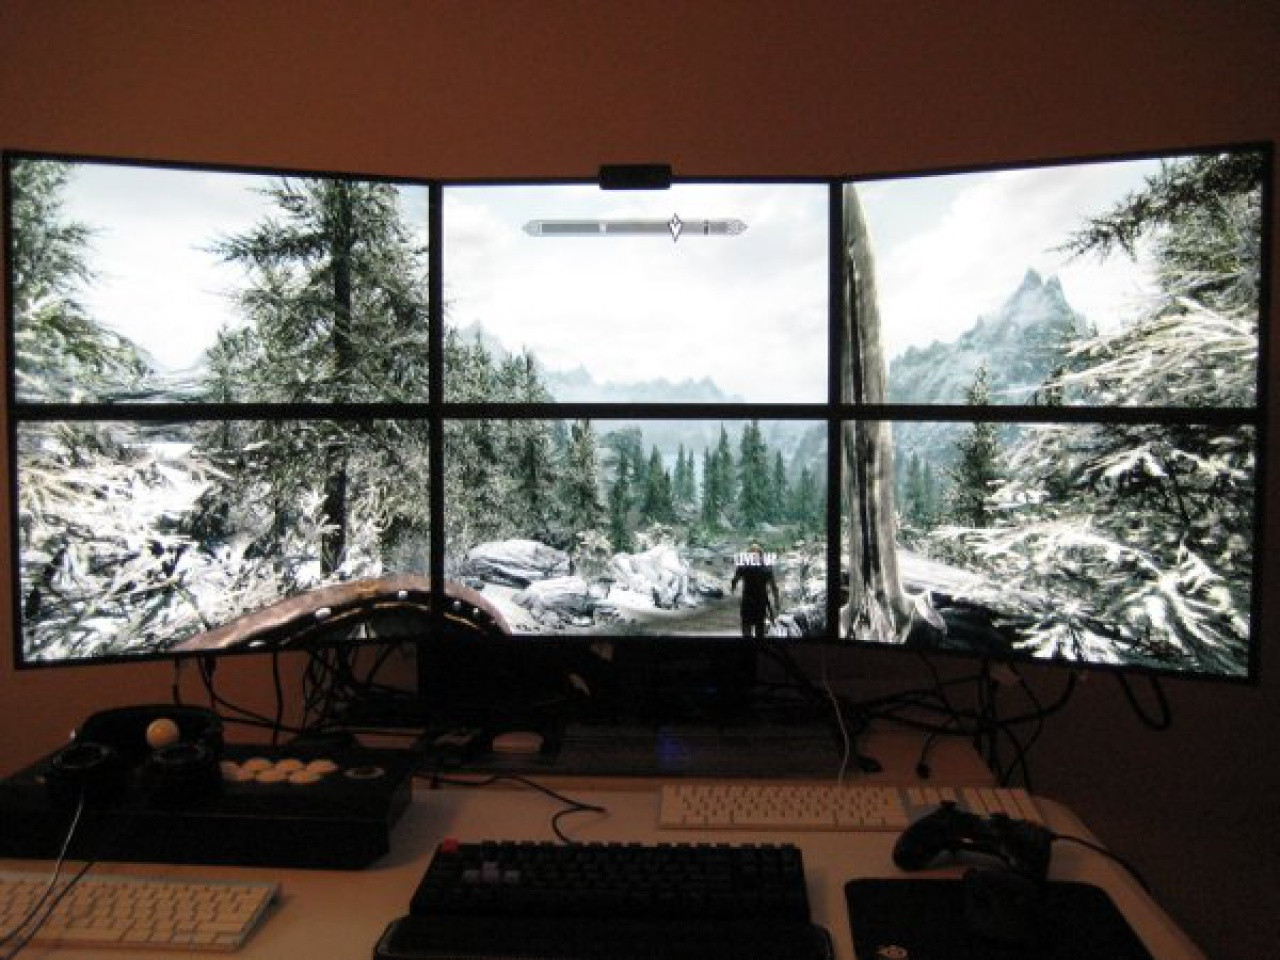 Skyrim Dual Monitor Wallpapers